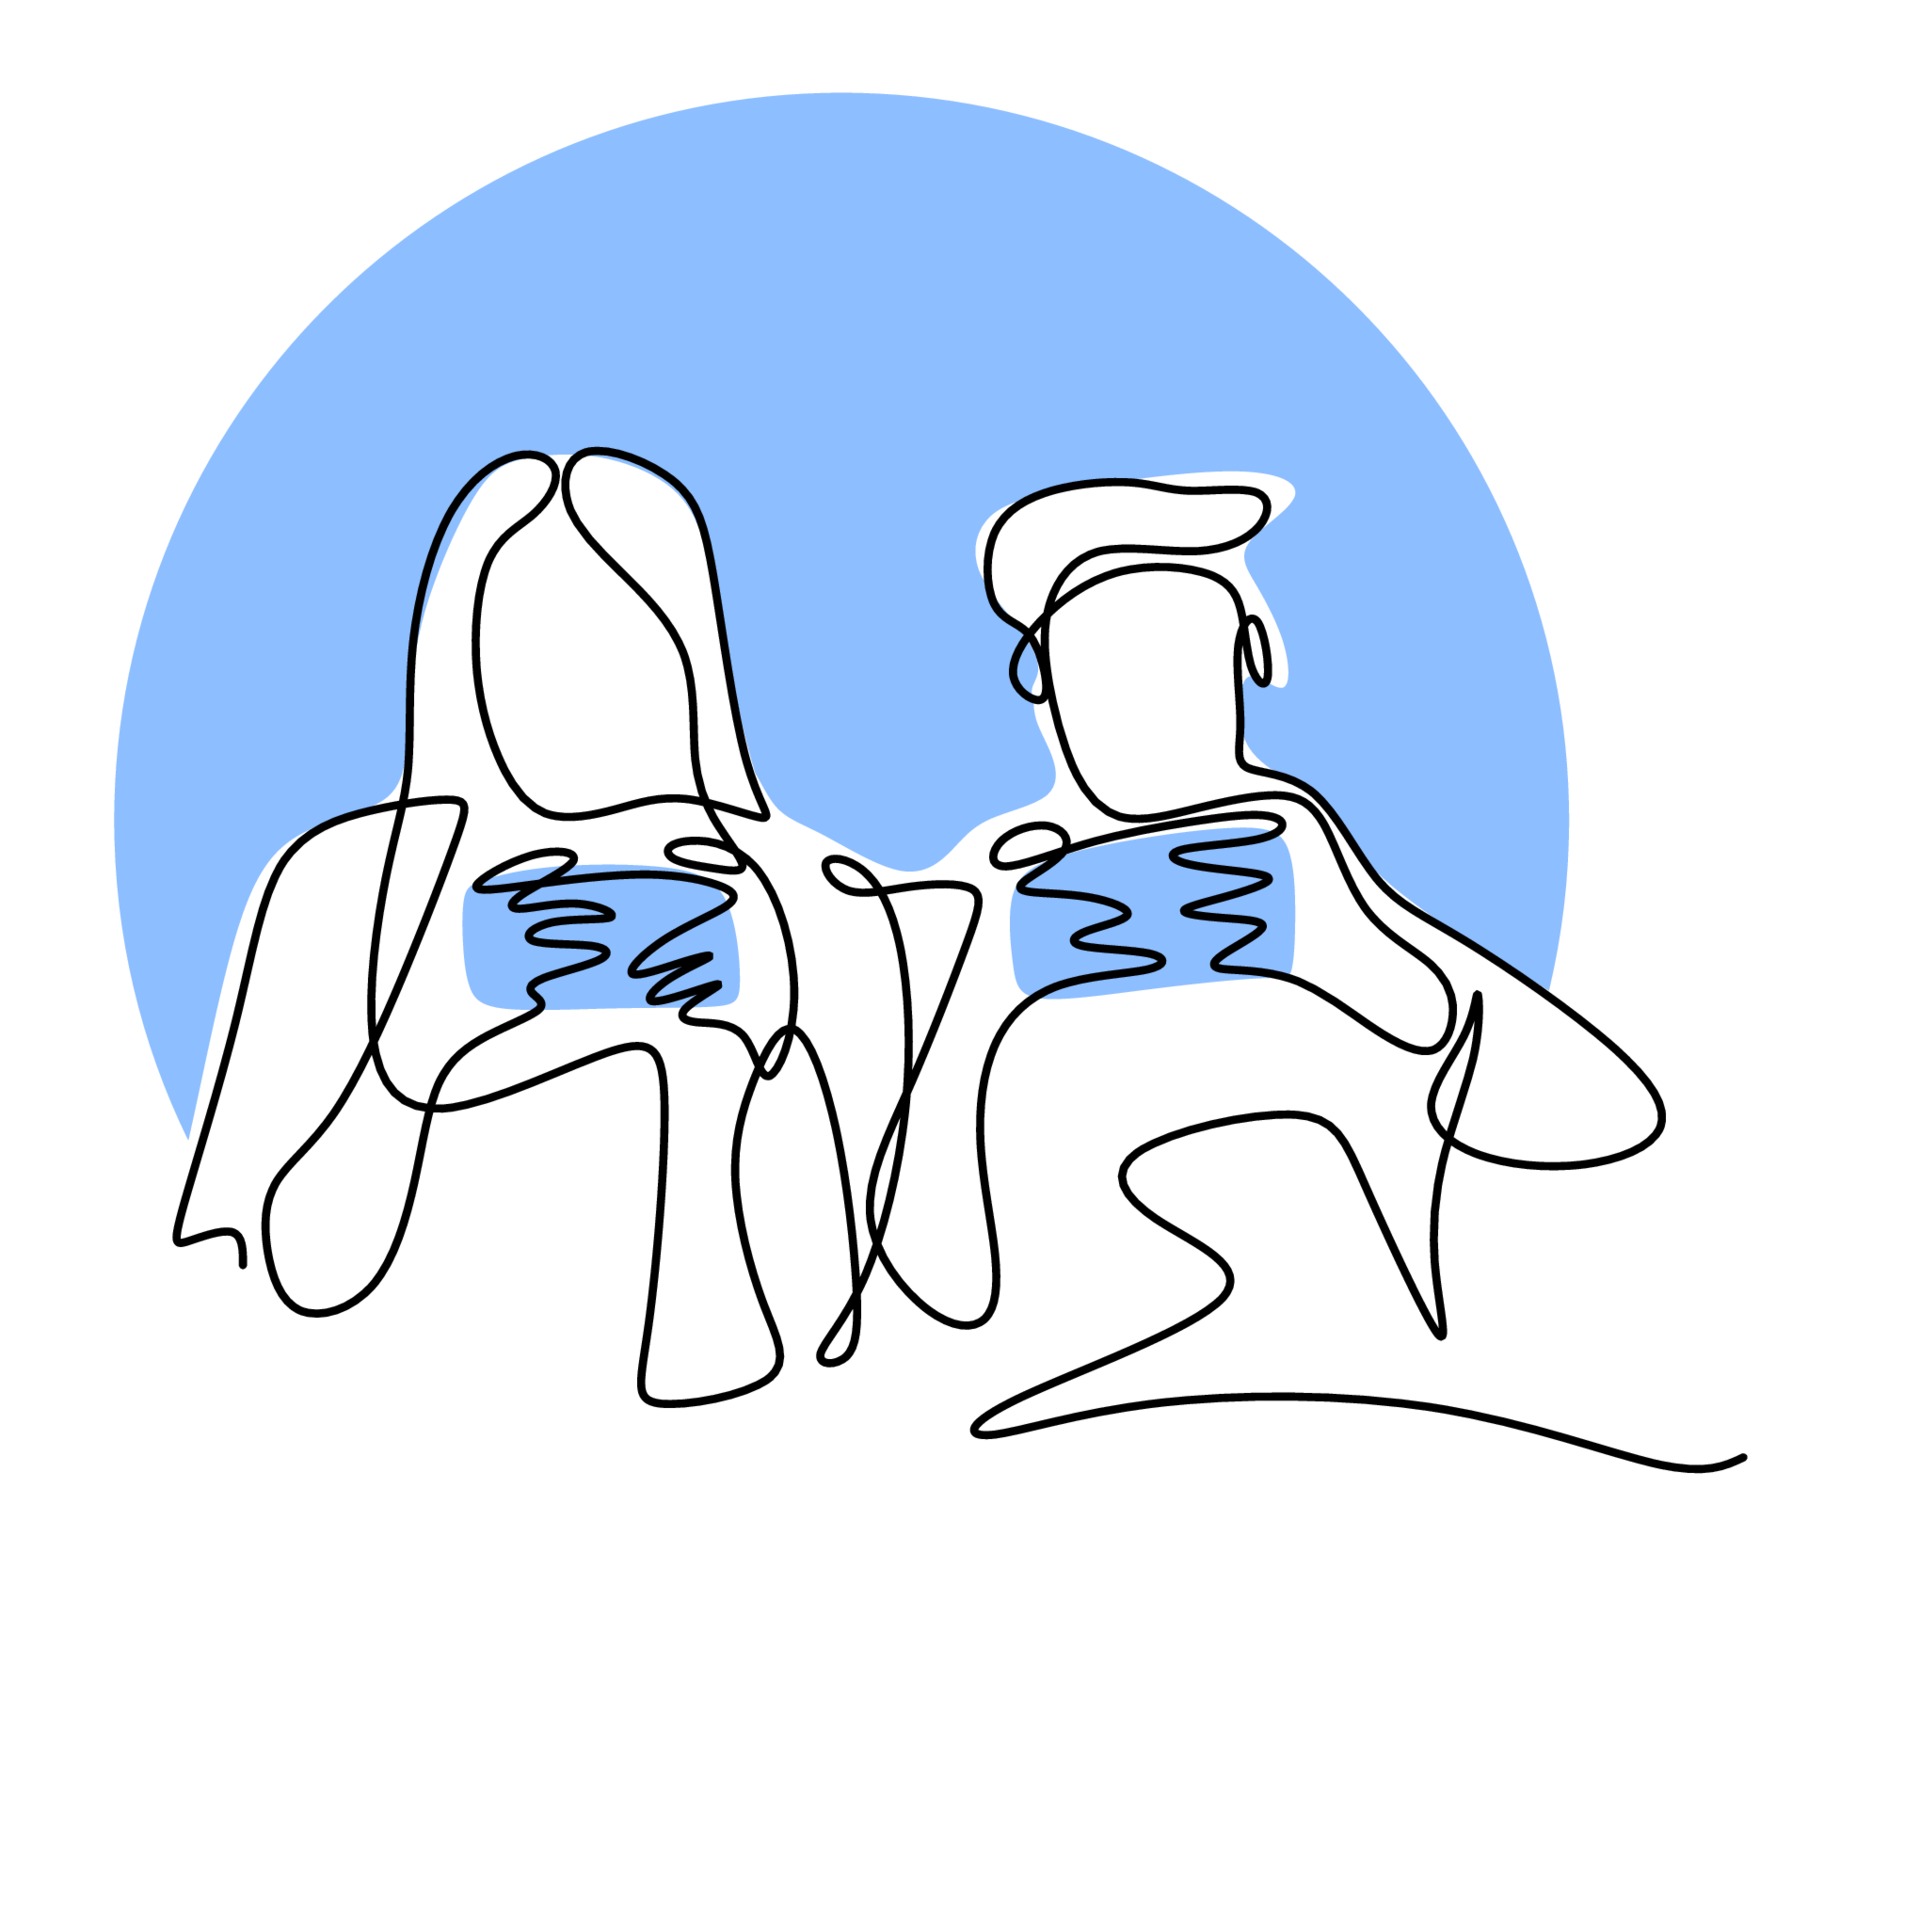 desenho de linha contínua de dois jovens jogadores jogando um console de  videogame. feliz masculino e feminino sentado no sofá sparring jogando em  seu tempo livre. conceito de viciado em jogadores. ilustração